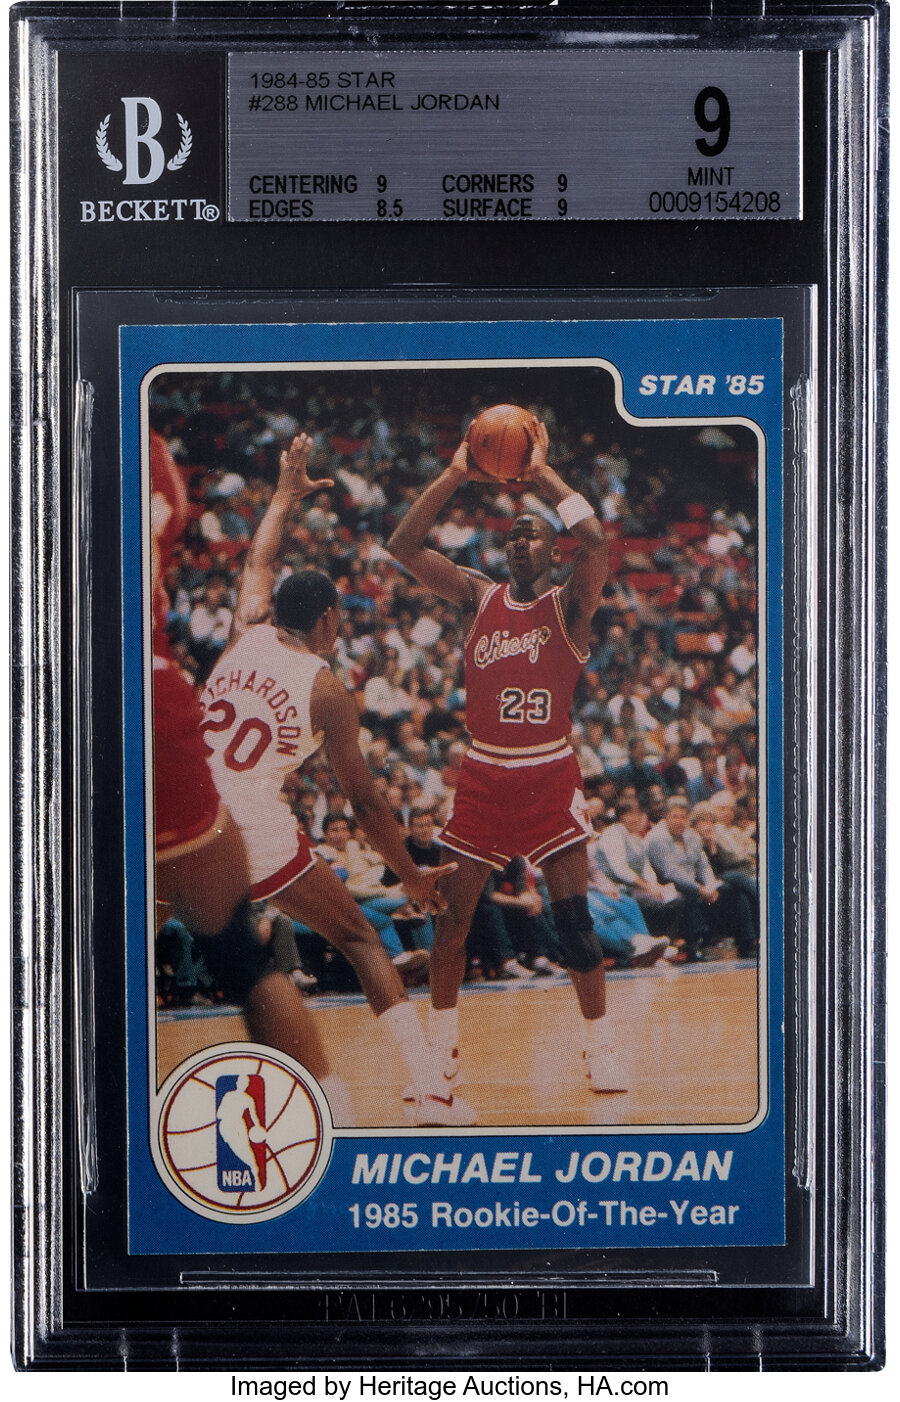 1984 Star Co. Michael Jordan #288 BGS Mint 9 - Pop Seven, None Superior!